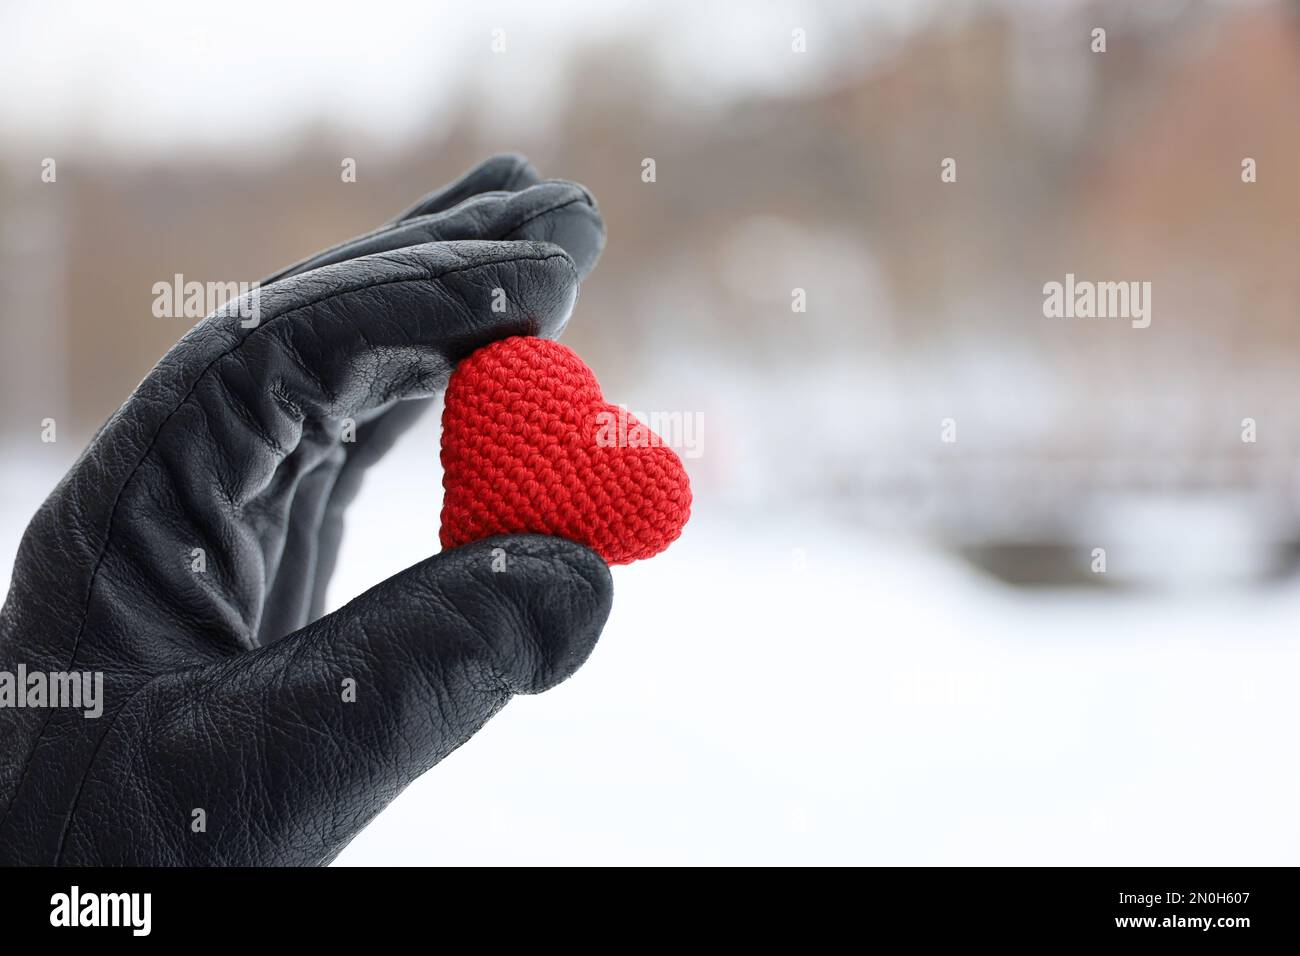 Coeur tricoté rouge dans la main femelle en cuir noir gant sur fond de parc à neige. Concept d'amour romantique, Saint-Valentin, temps d'hiver Banque D'Images